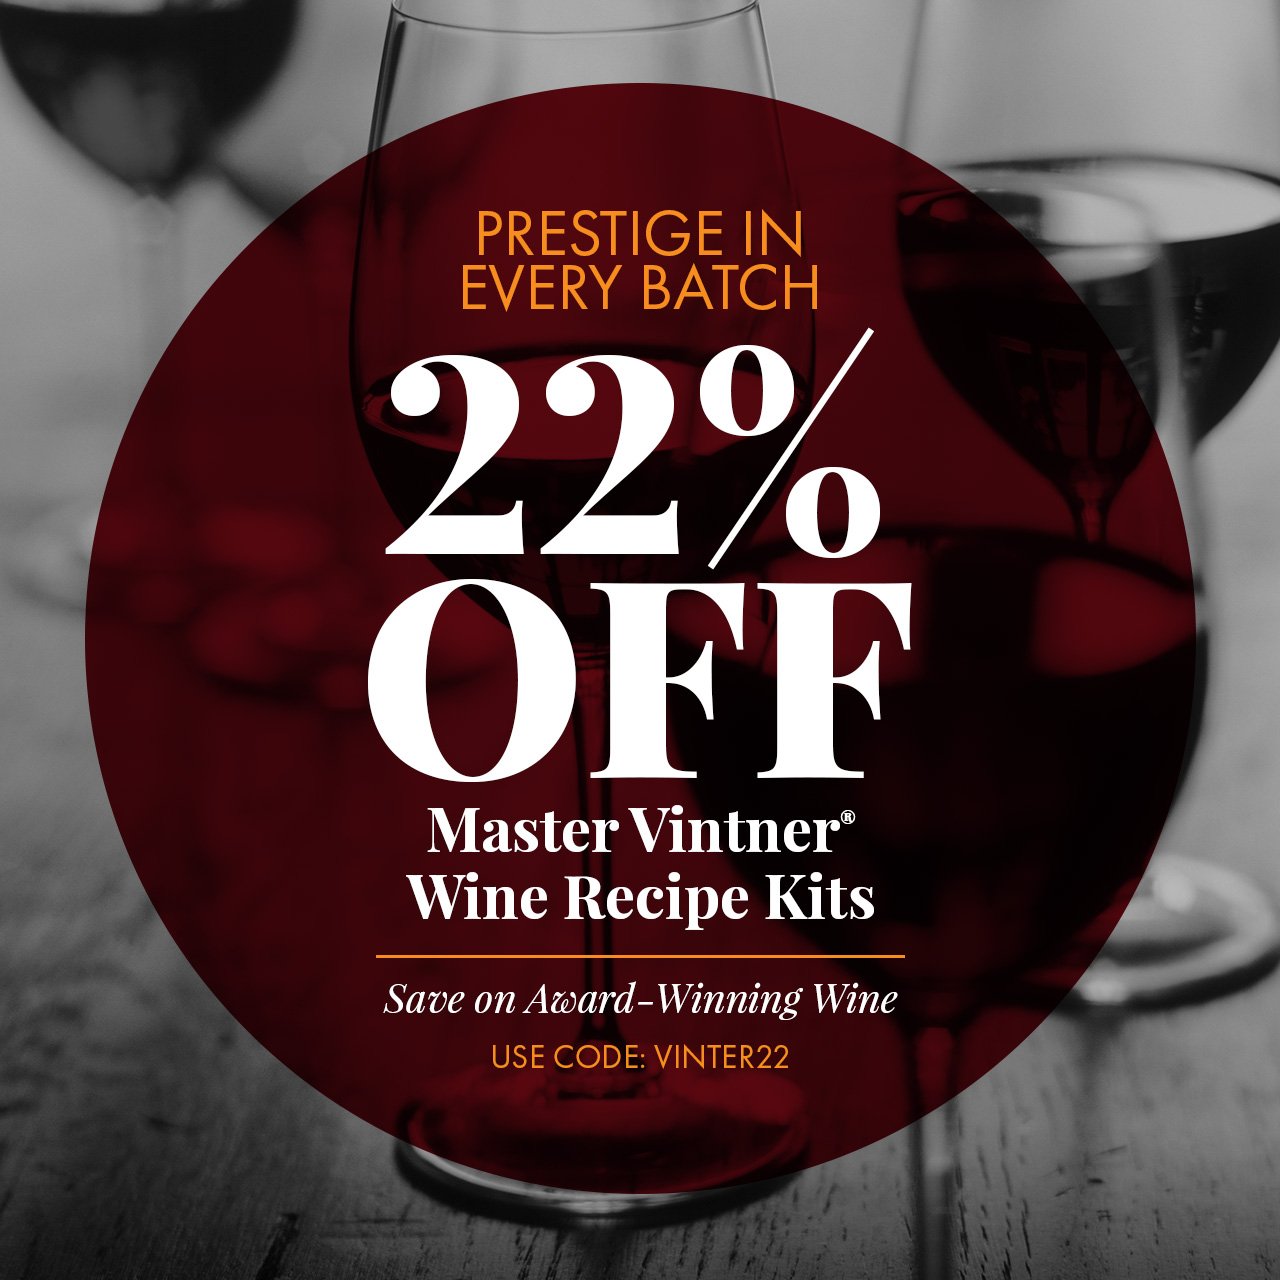 Prestige in Every Batch. 22% Off Master Vintner Wine Kits Save Now on Award-Winning Wine Enter Code: VINTNER22